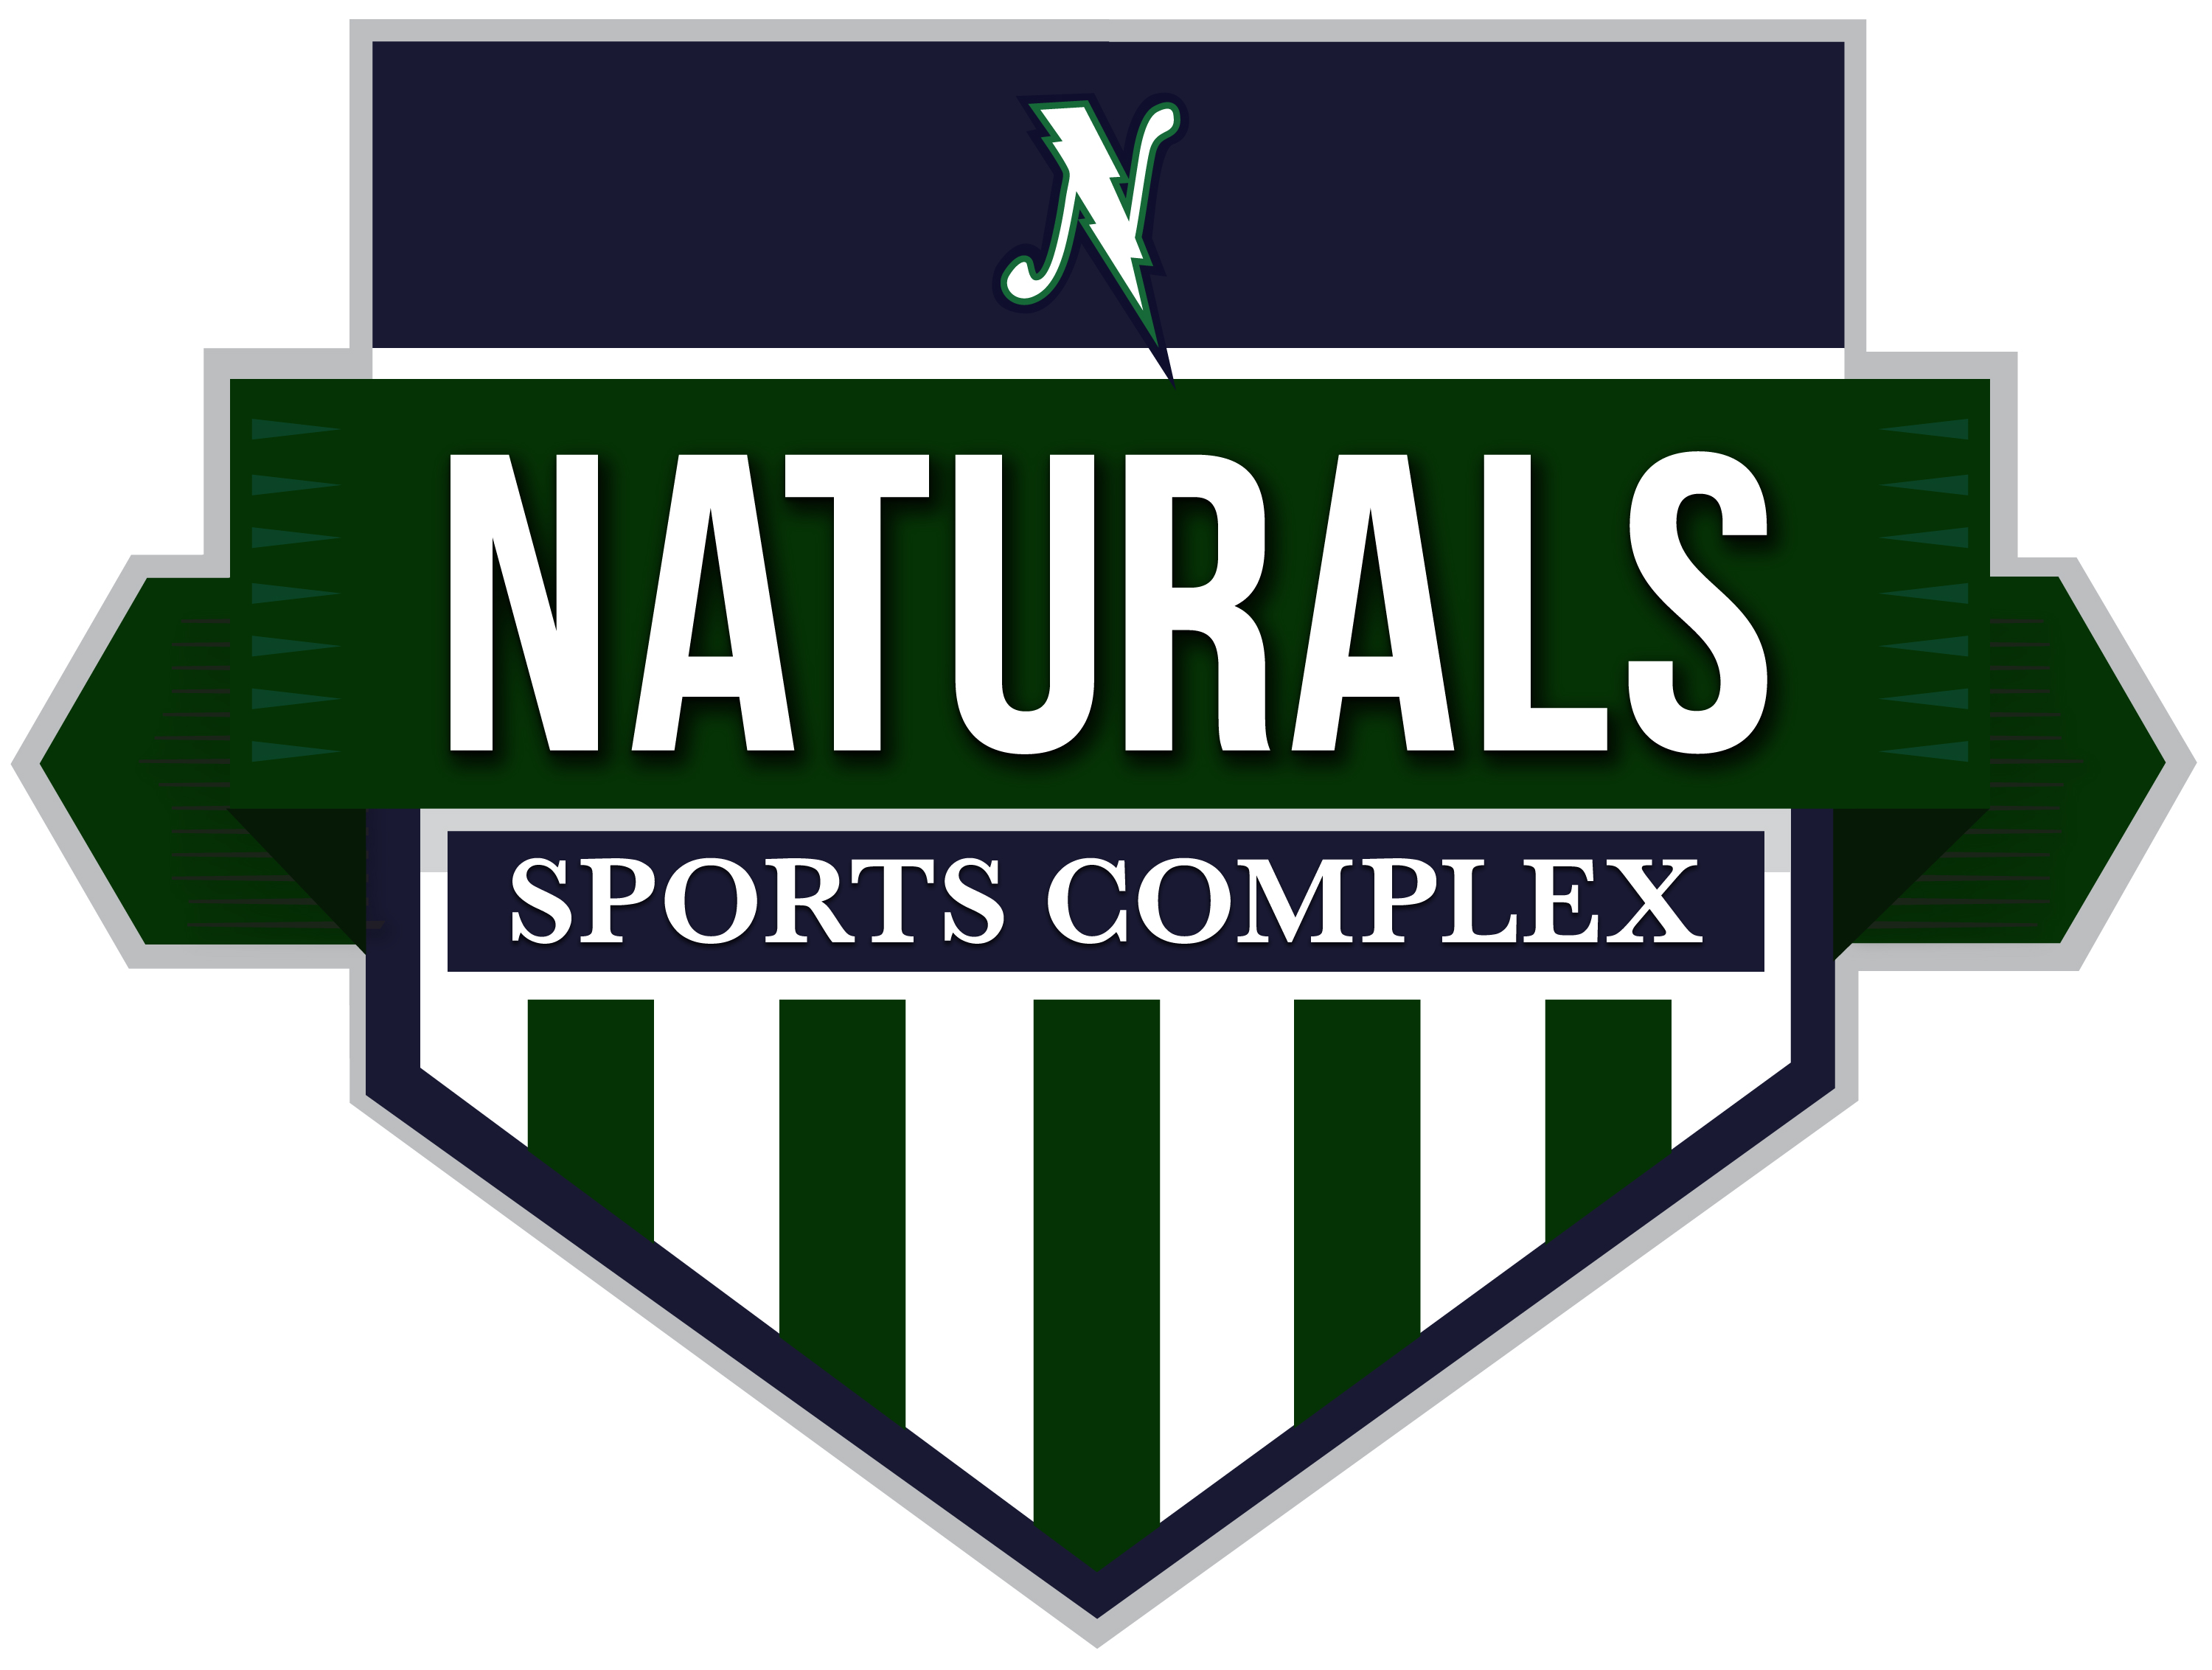 LBA Naturals : LBA Naturals Baseball and Softball